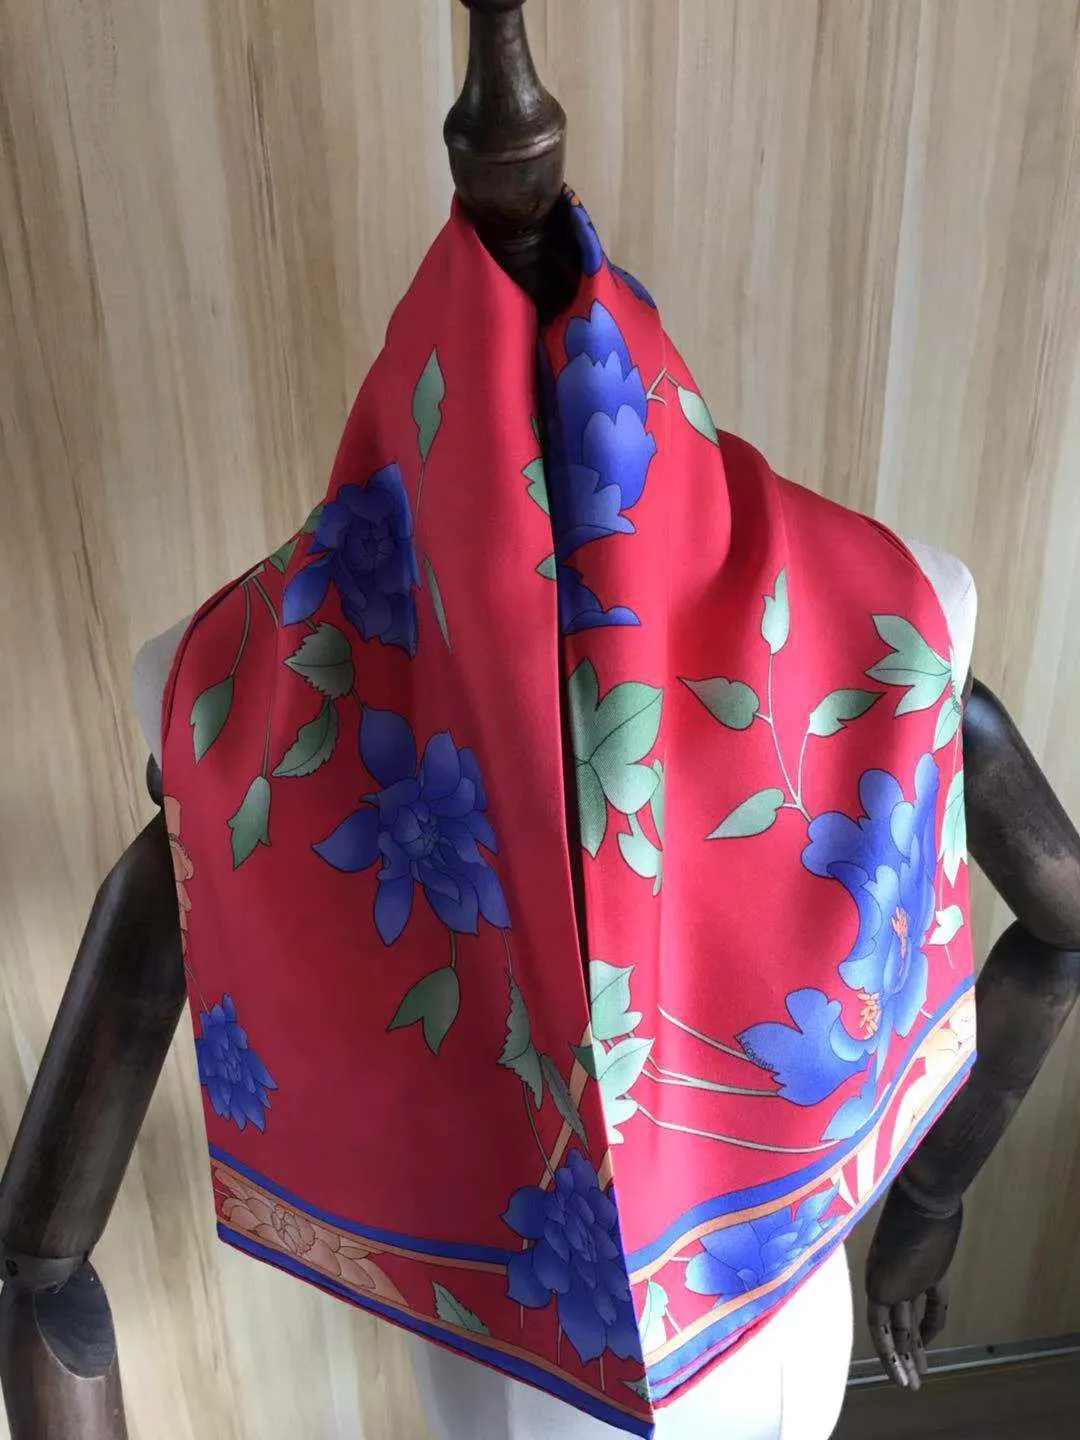 2021 arrival fashion elegant red flower 100% silk scarf 90*90 cm square shawl twill wrap for women lady girl